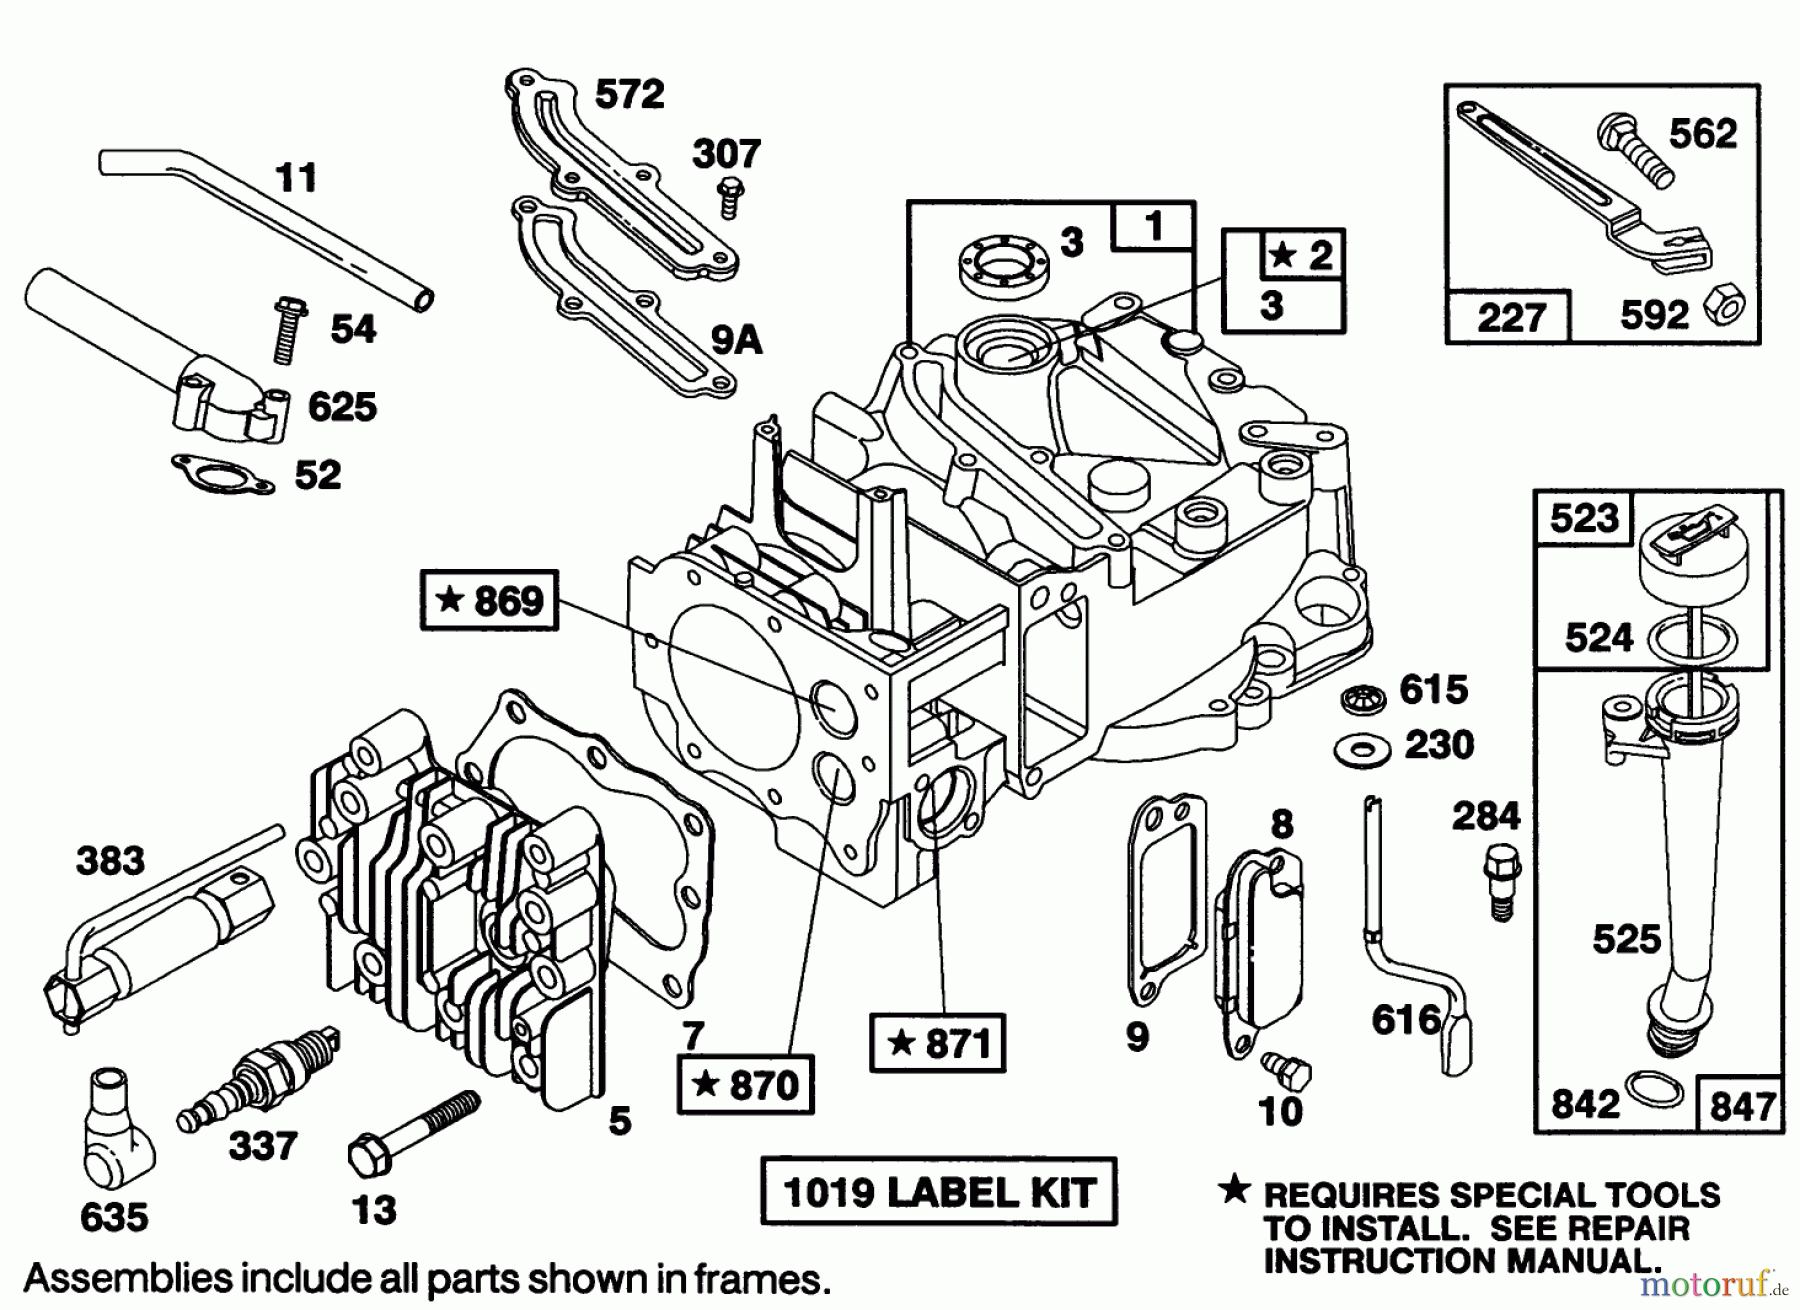  Toro Neu Mowers, Walk-Behind Seite 1 20101 - Toro Lawnmower, 1991 (1000001-1999999) ENGINE BRIGGS & STRATTON MODEL 122702-3188-01 #1